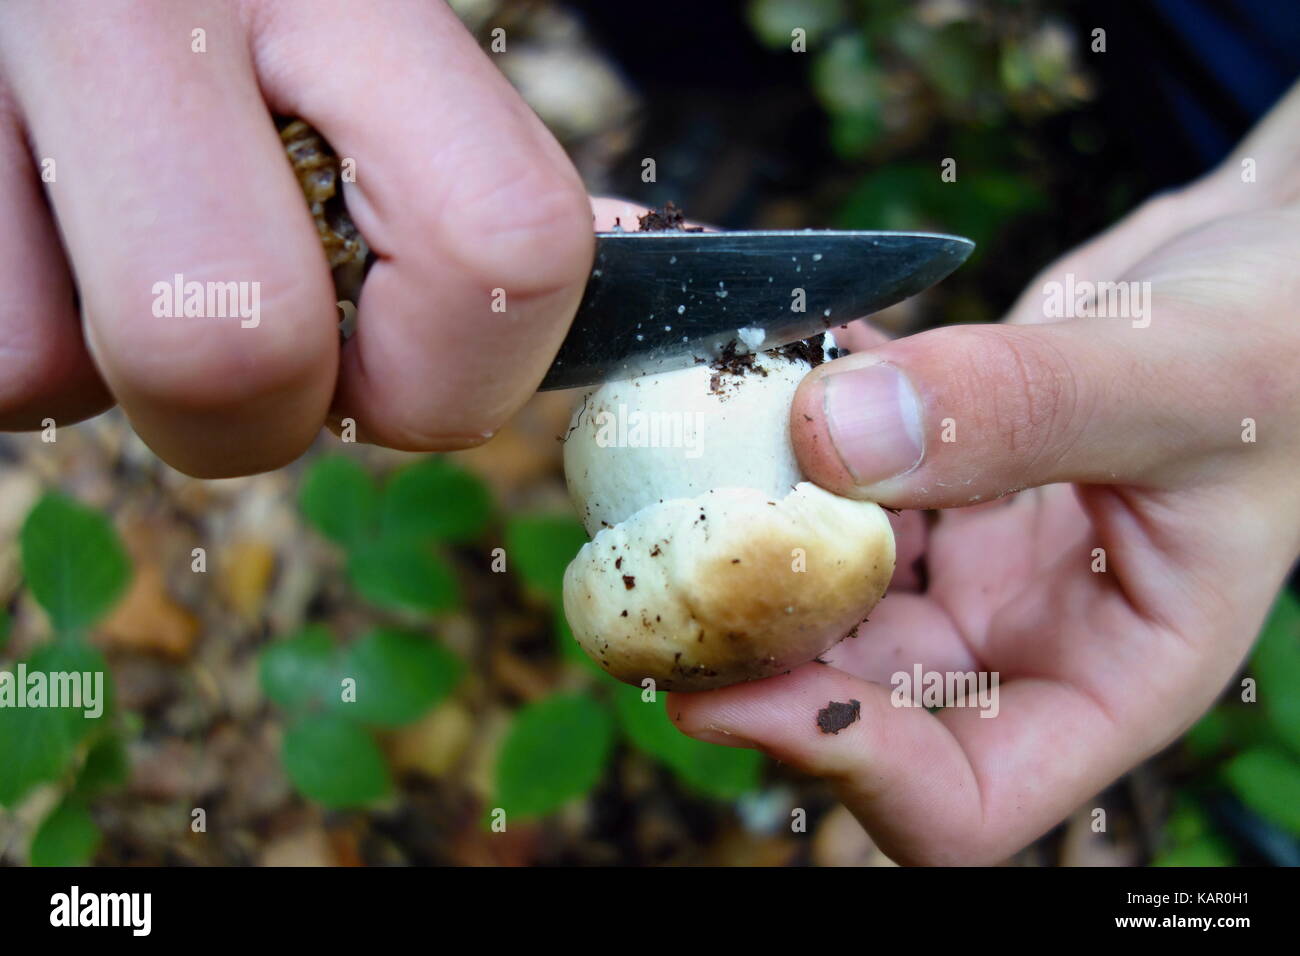 Boletus reticulatus (Boletus aestivalis, e noto come cep estivo) che cresce nella foresta. Concetto di taglio funghi nella foresta Foto Stock